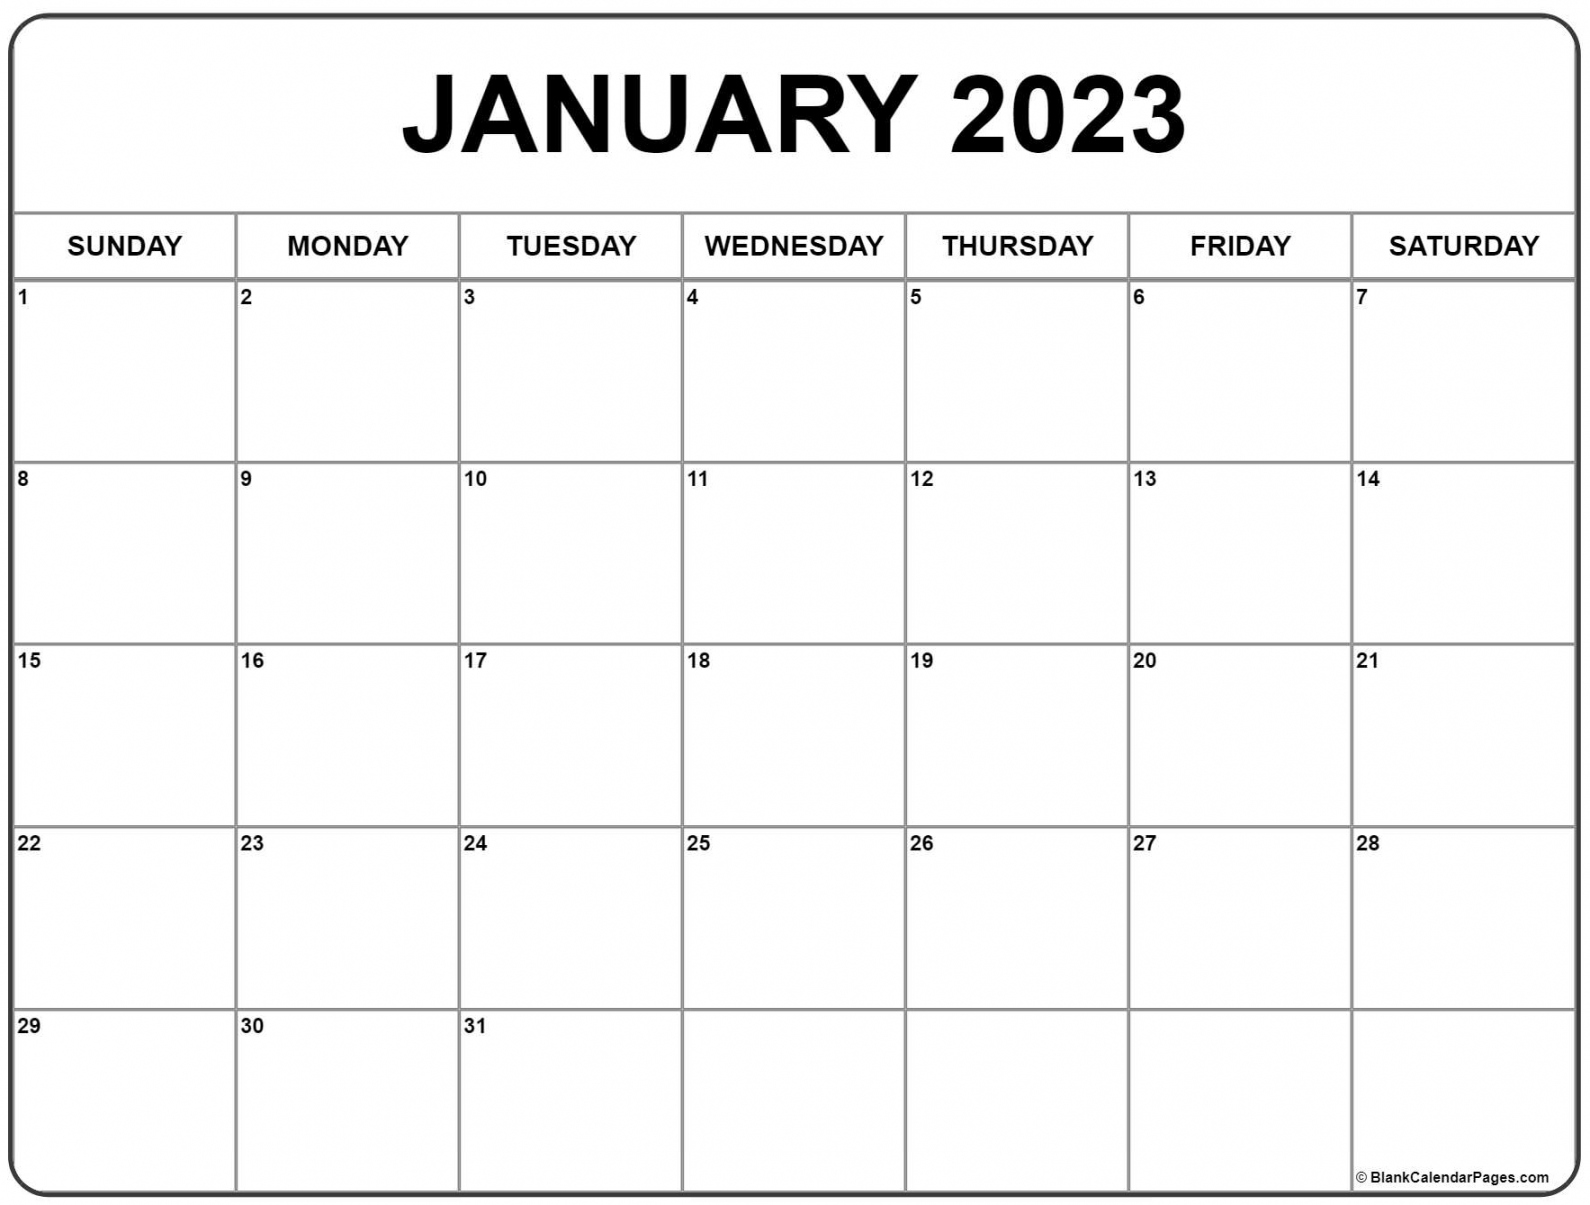 January 2023 Calendar Free Printable - Printable - January  calendar  free printable calendar